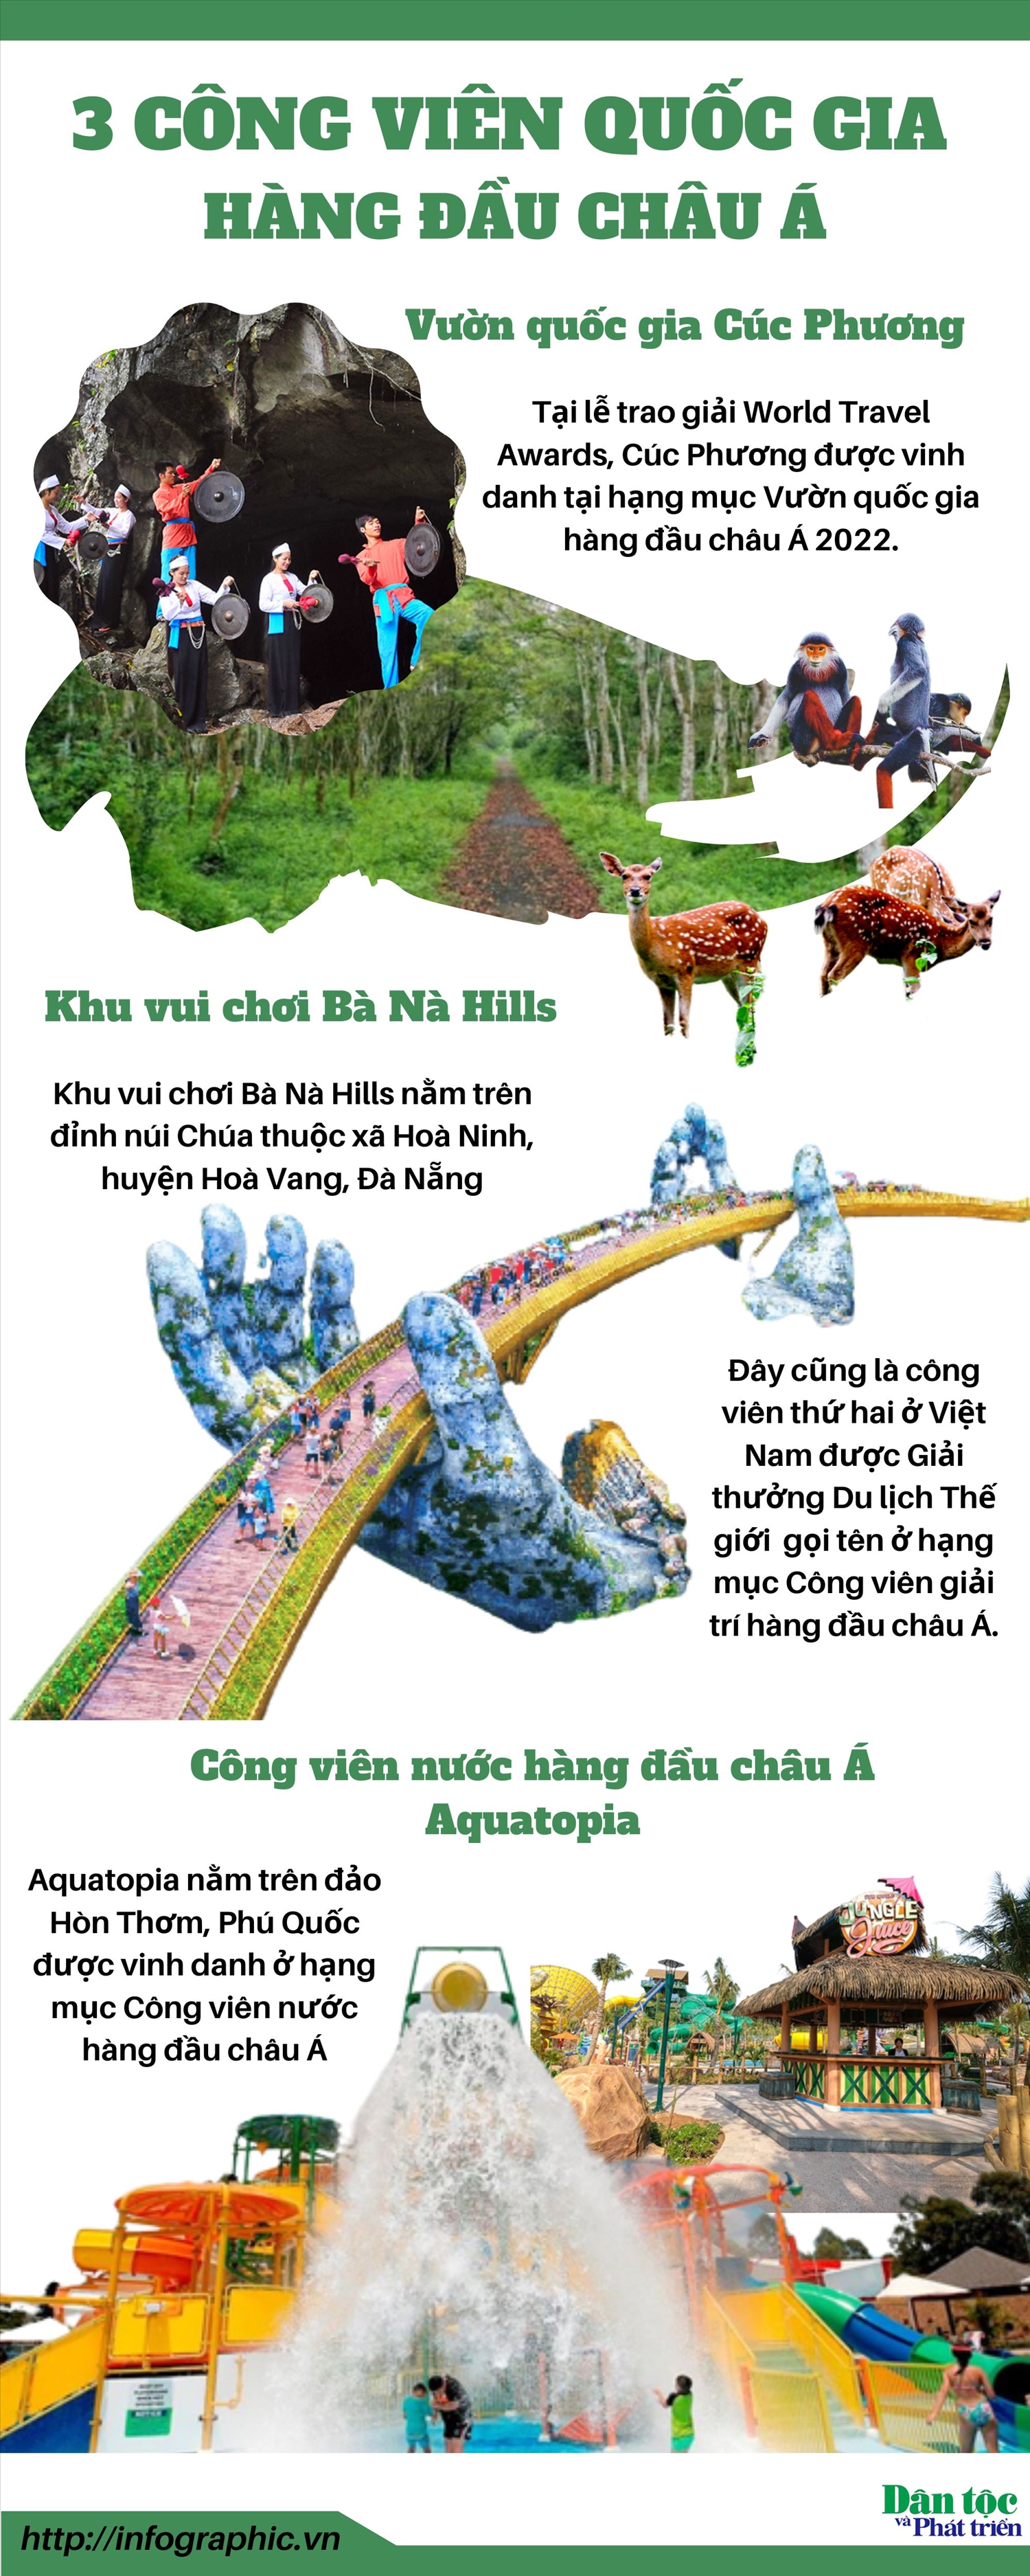 (TIn infographic) Việt Nam có 3 công viên hàng đầu châu Á